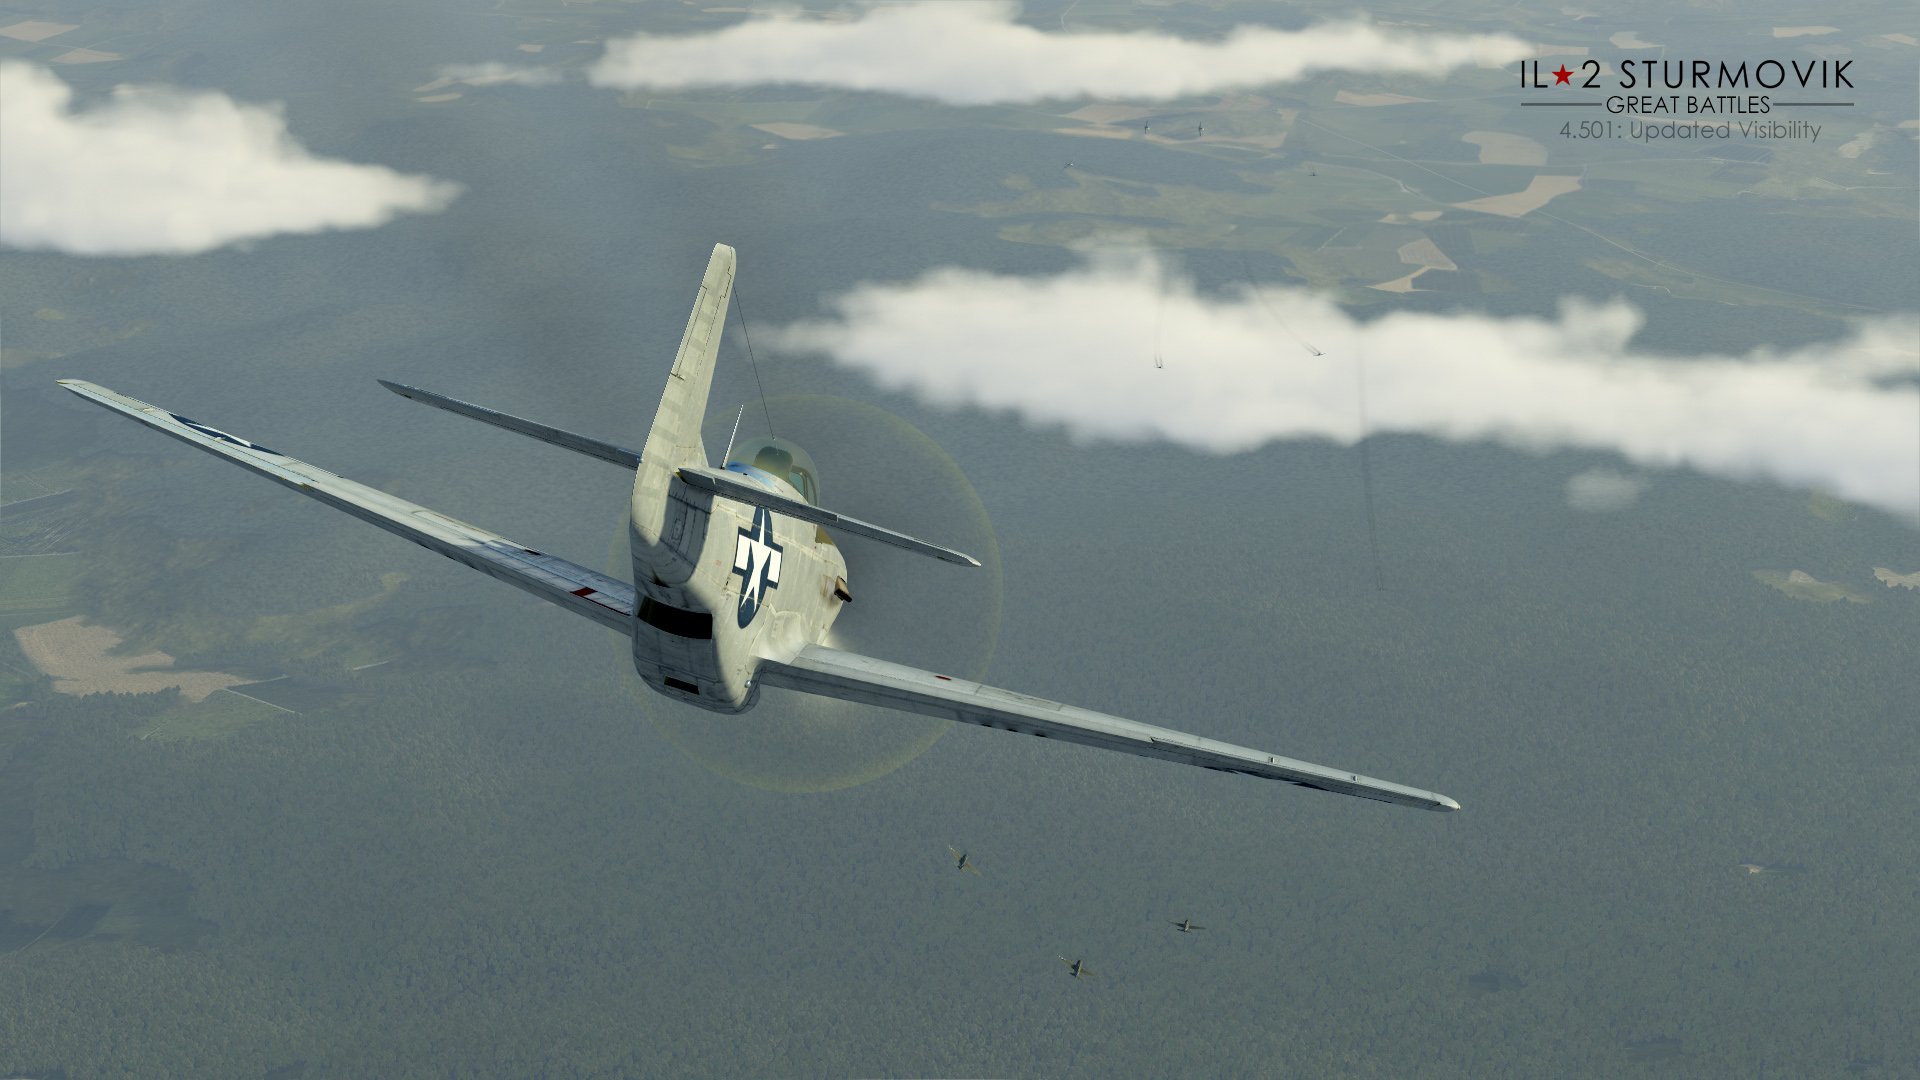 IL-2 Great Battles: Patch 4.501 pour une nouvelle visibilité des contacts !